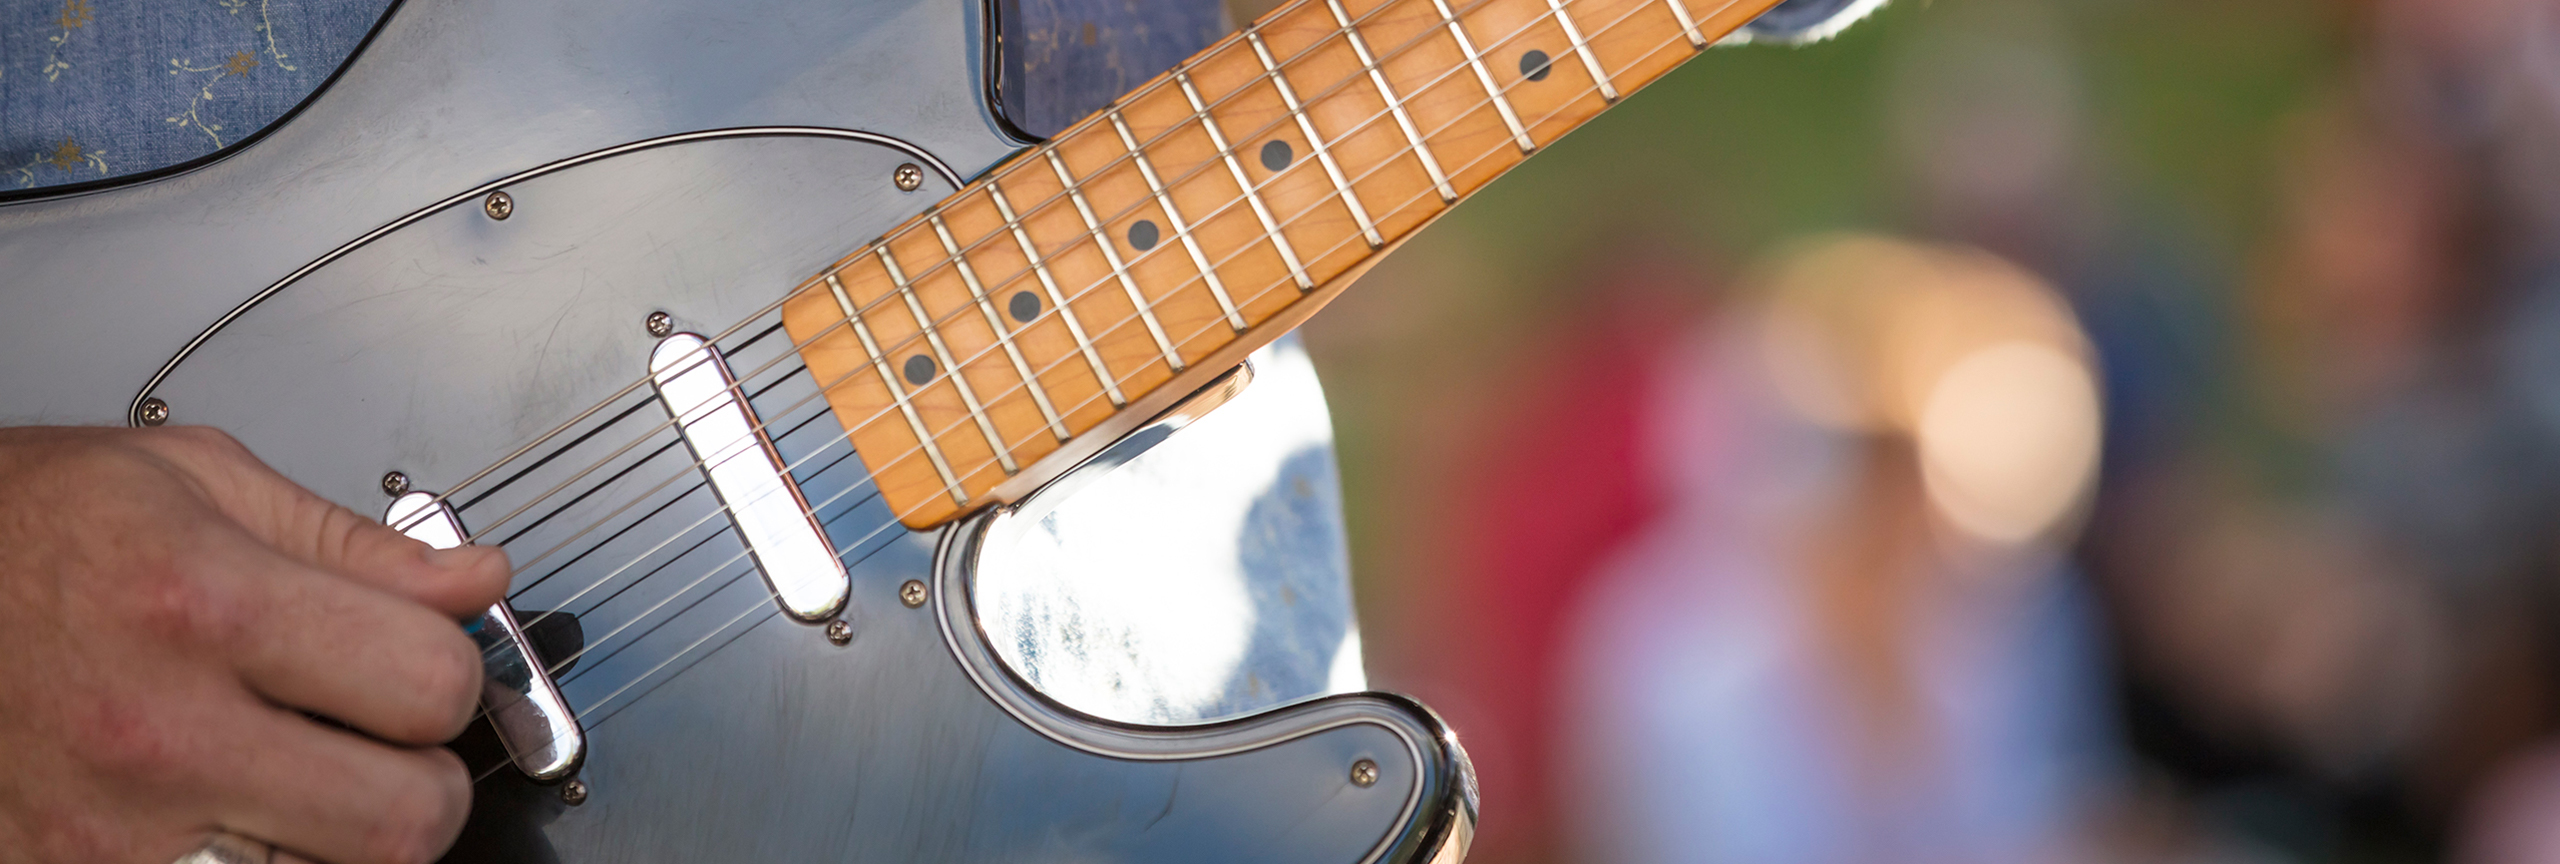 Closeup of man playing guitar.